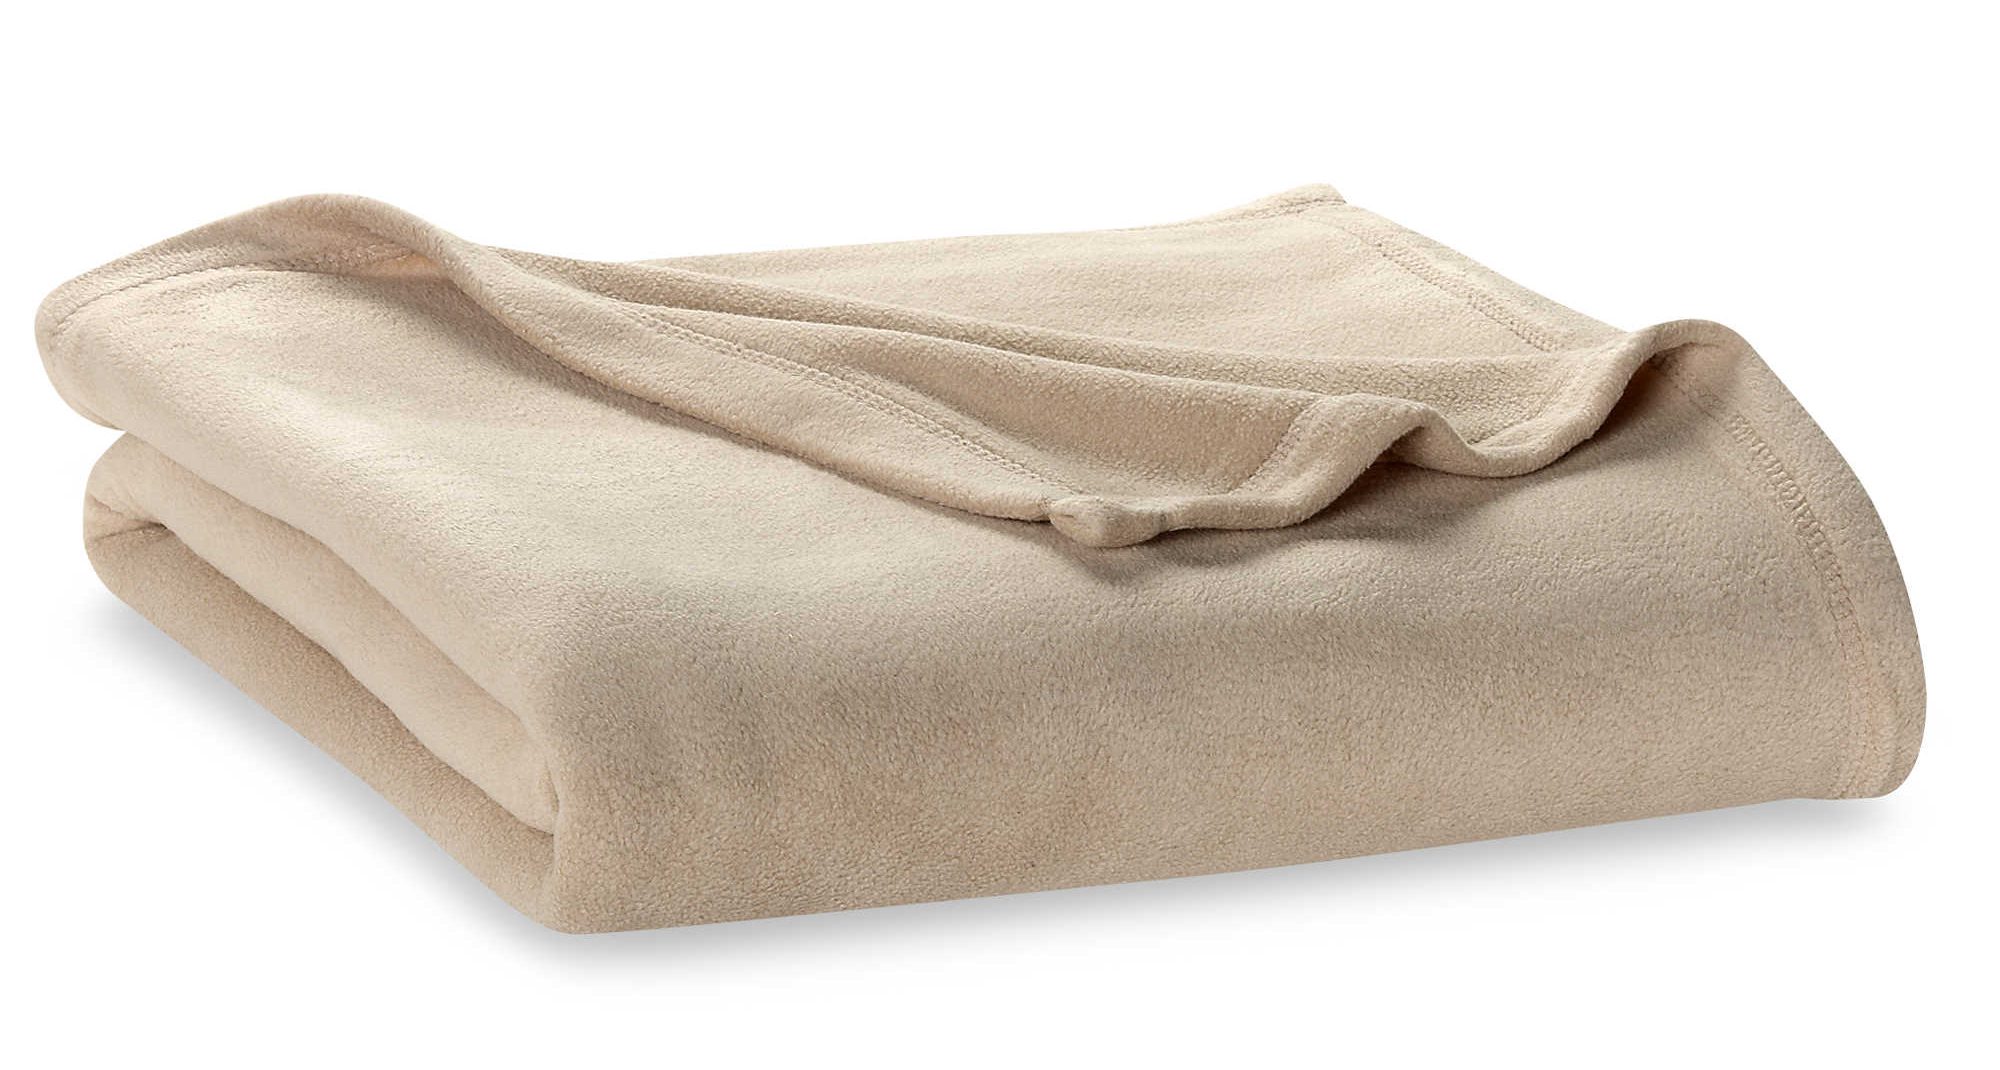 Berkshire Blanket® original fleece queen size blanket for $15